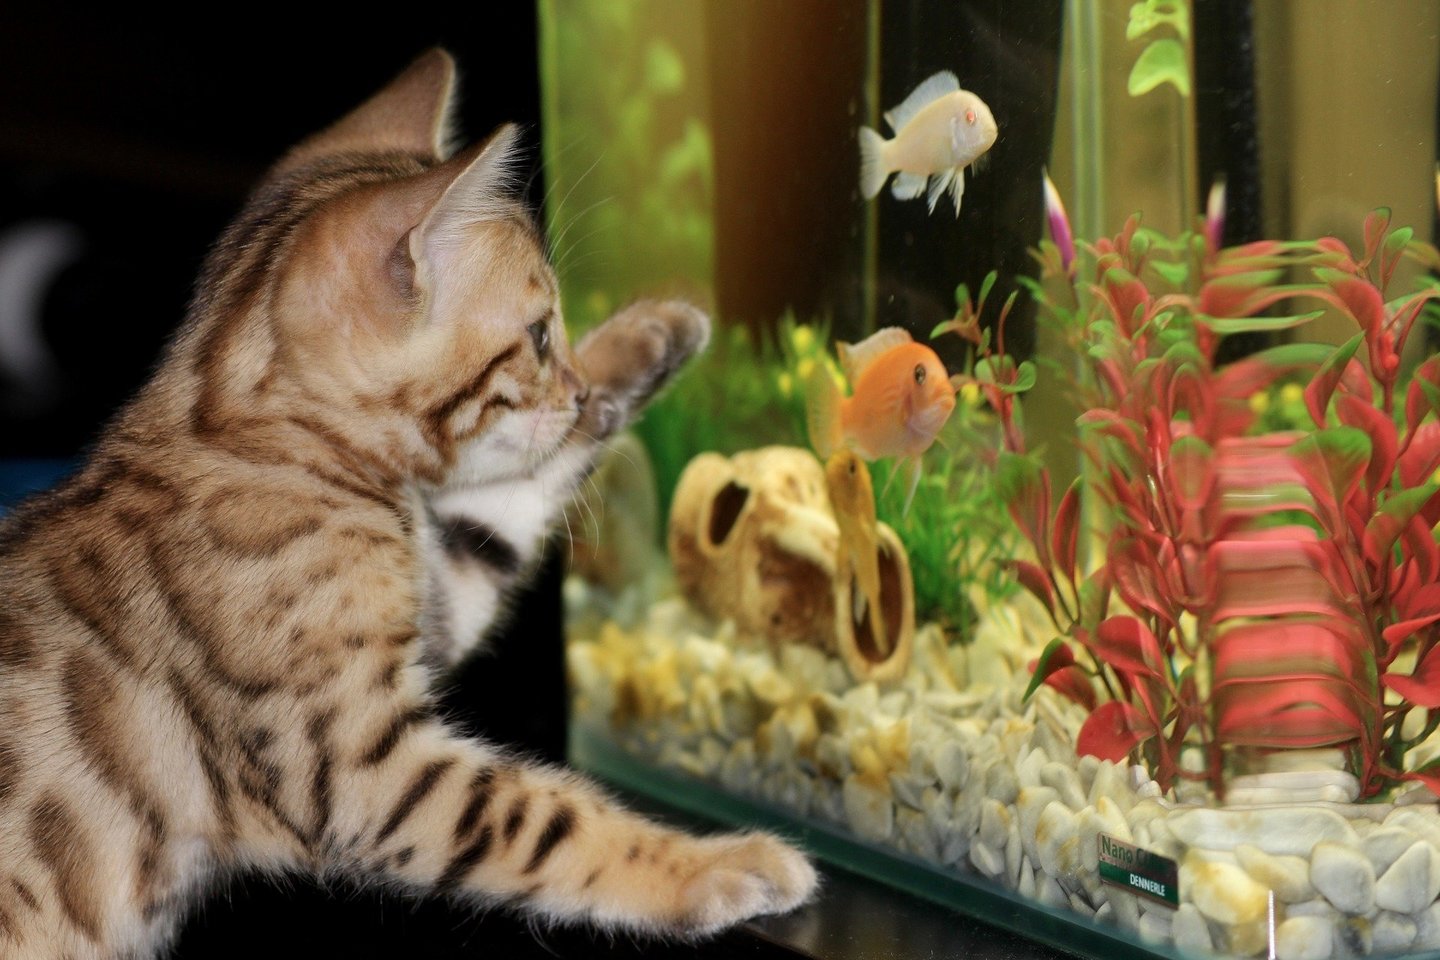 Įsirengti tinkamą bei akį džiuginantį akvariumą – ne taip ir sunku.<br> Shutterstock nuotr.